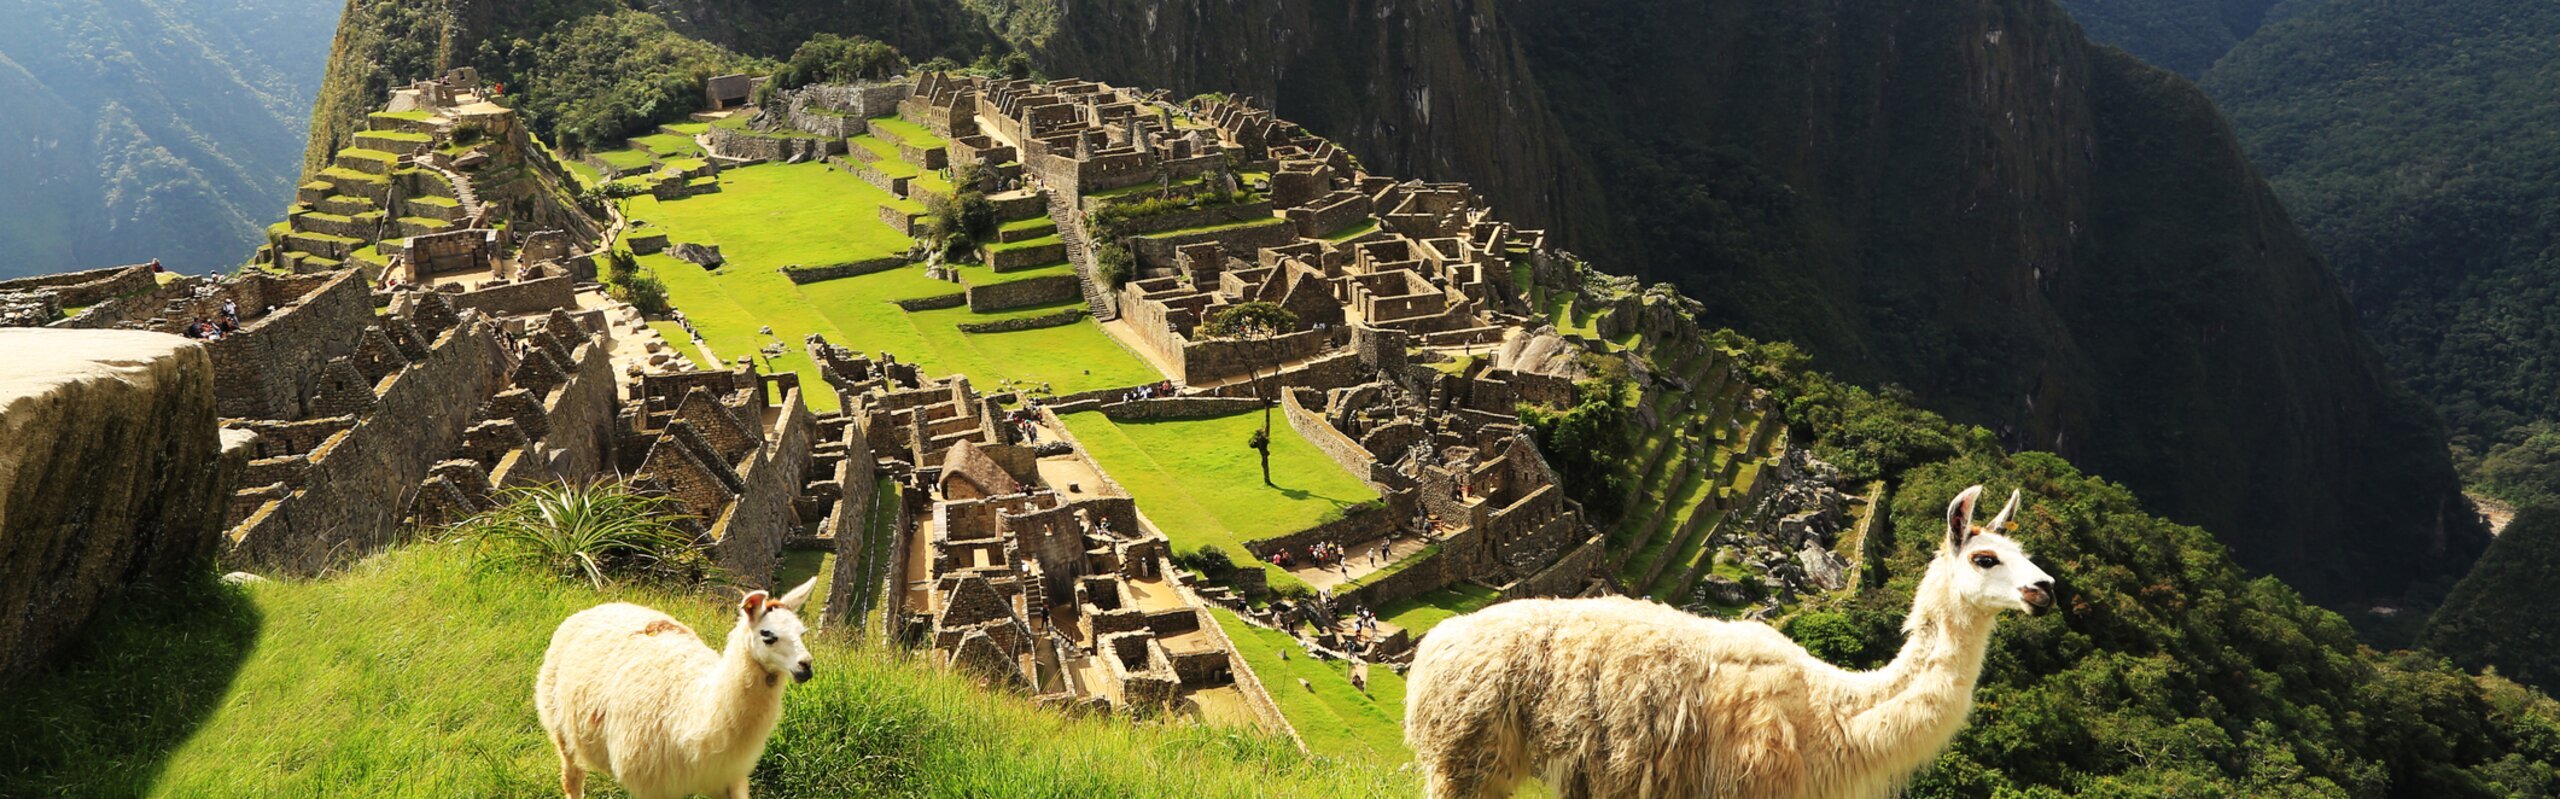 Peru Travel Guide: Customize a Unique Personalized Trip